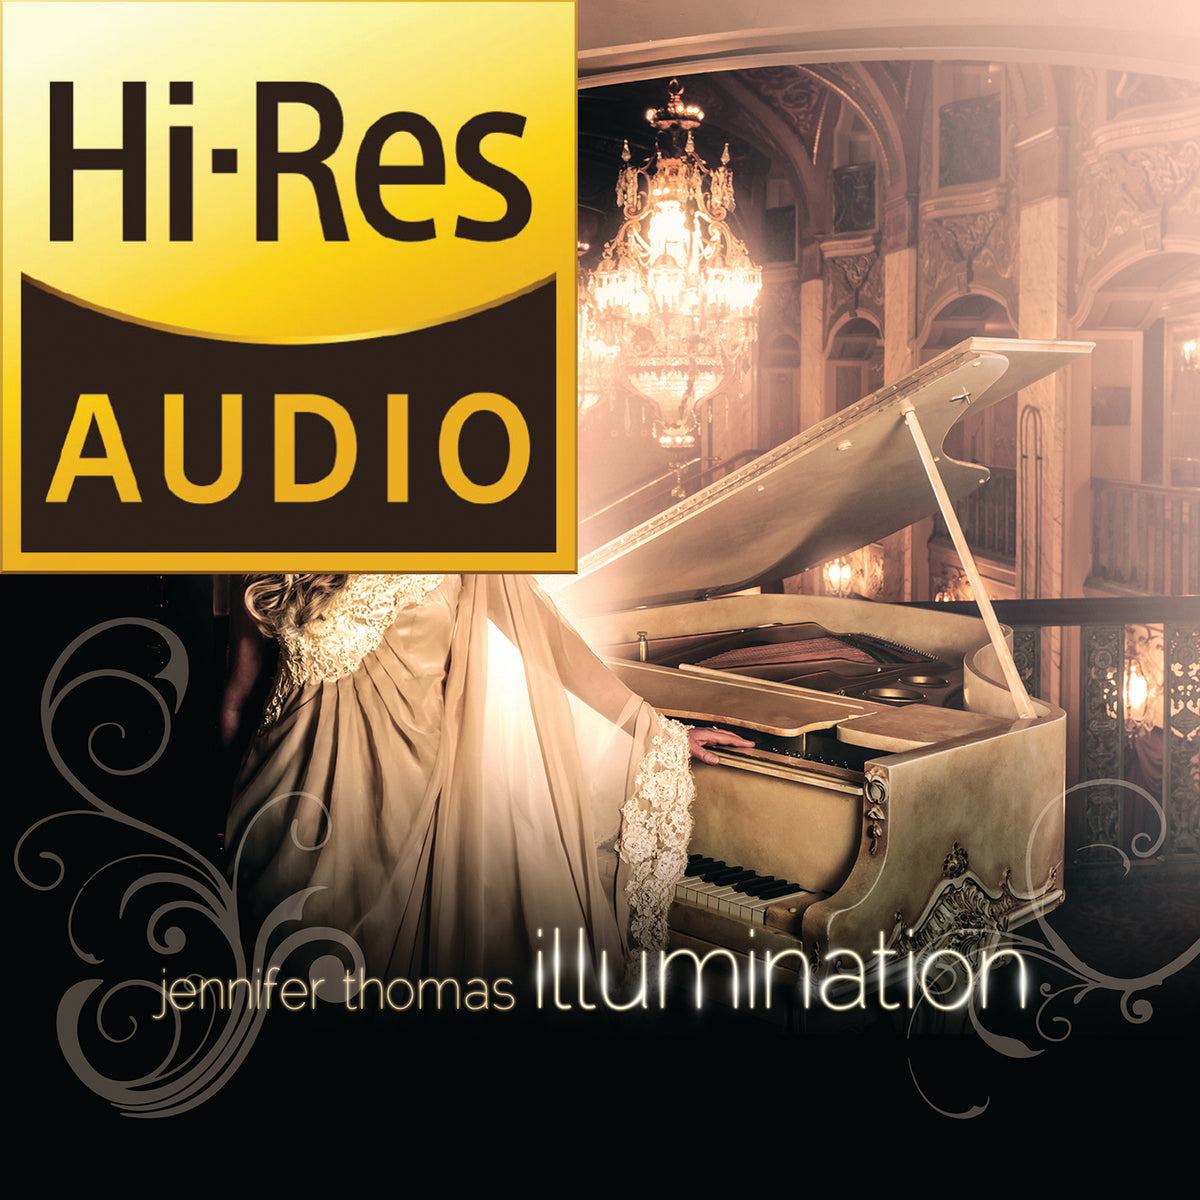 Descarga del álbum digital Illumination en alta resolución 24/44 (2012)